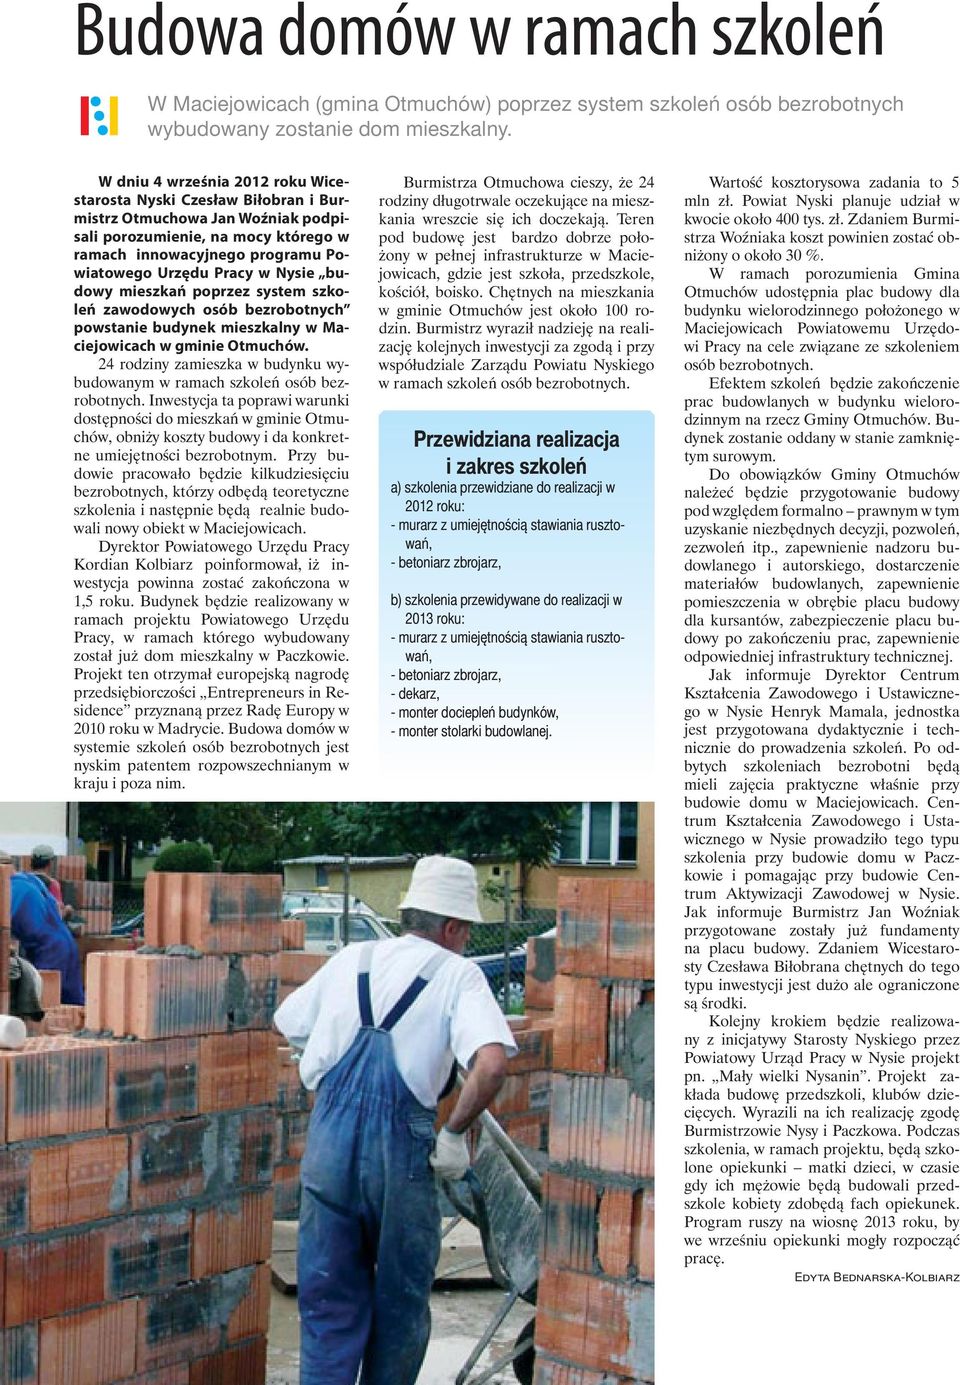 Nysie budowy mieszkań poprzez system szkoleń zawodowych osób bezrobotnych powstanie budynek mieszkalny w Maciejowicach w gminie Otmuchów.